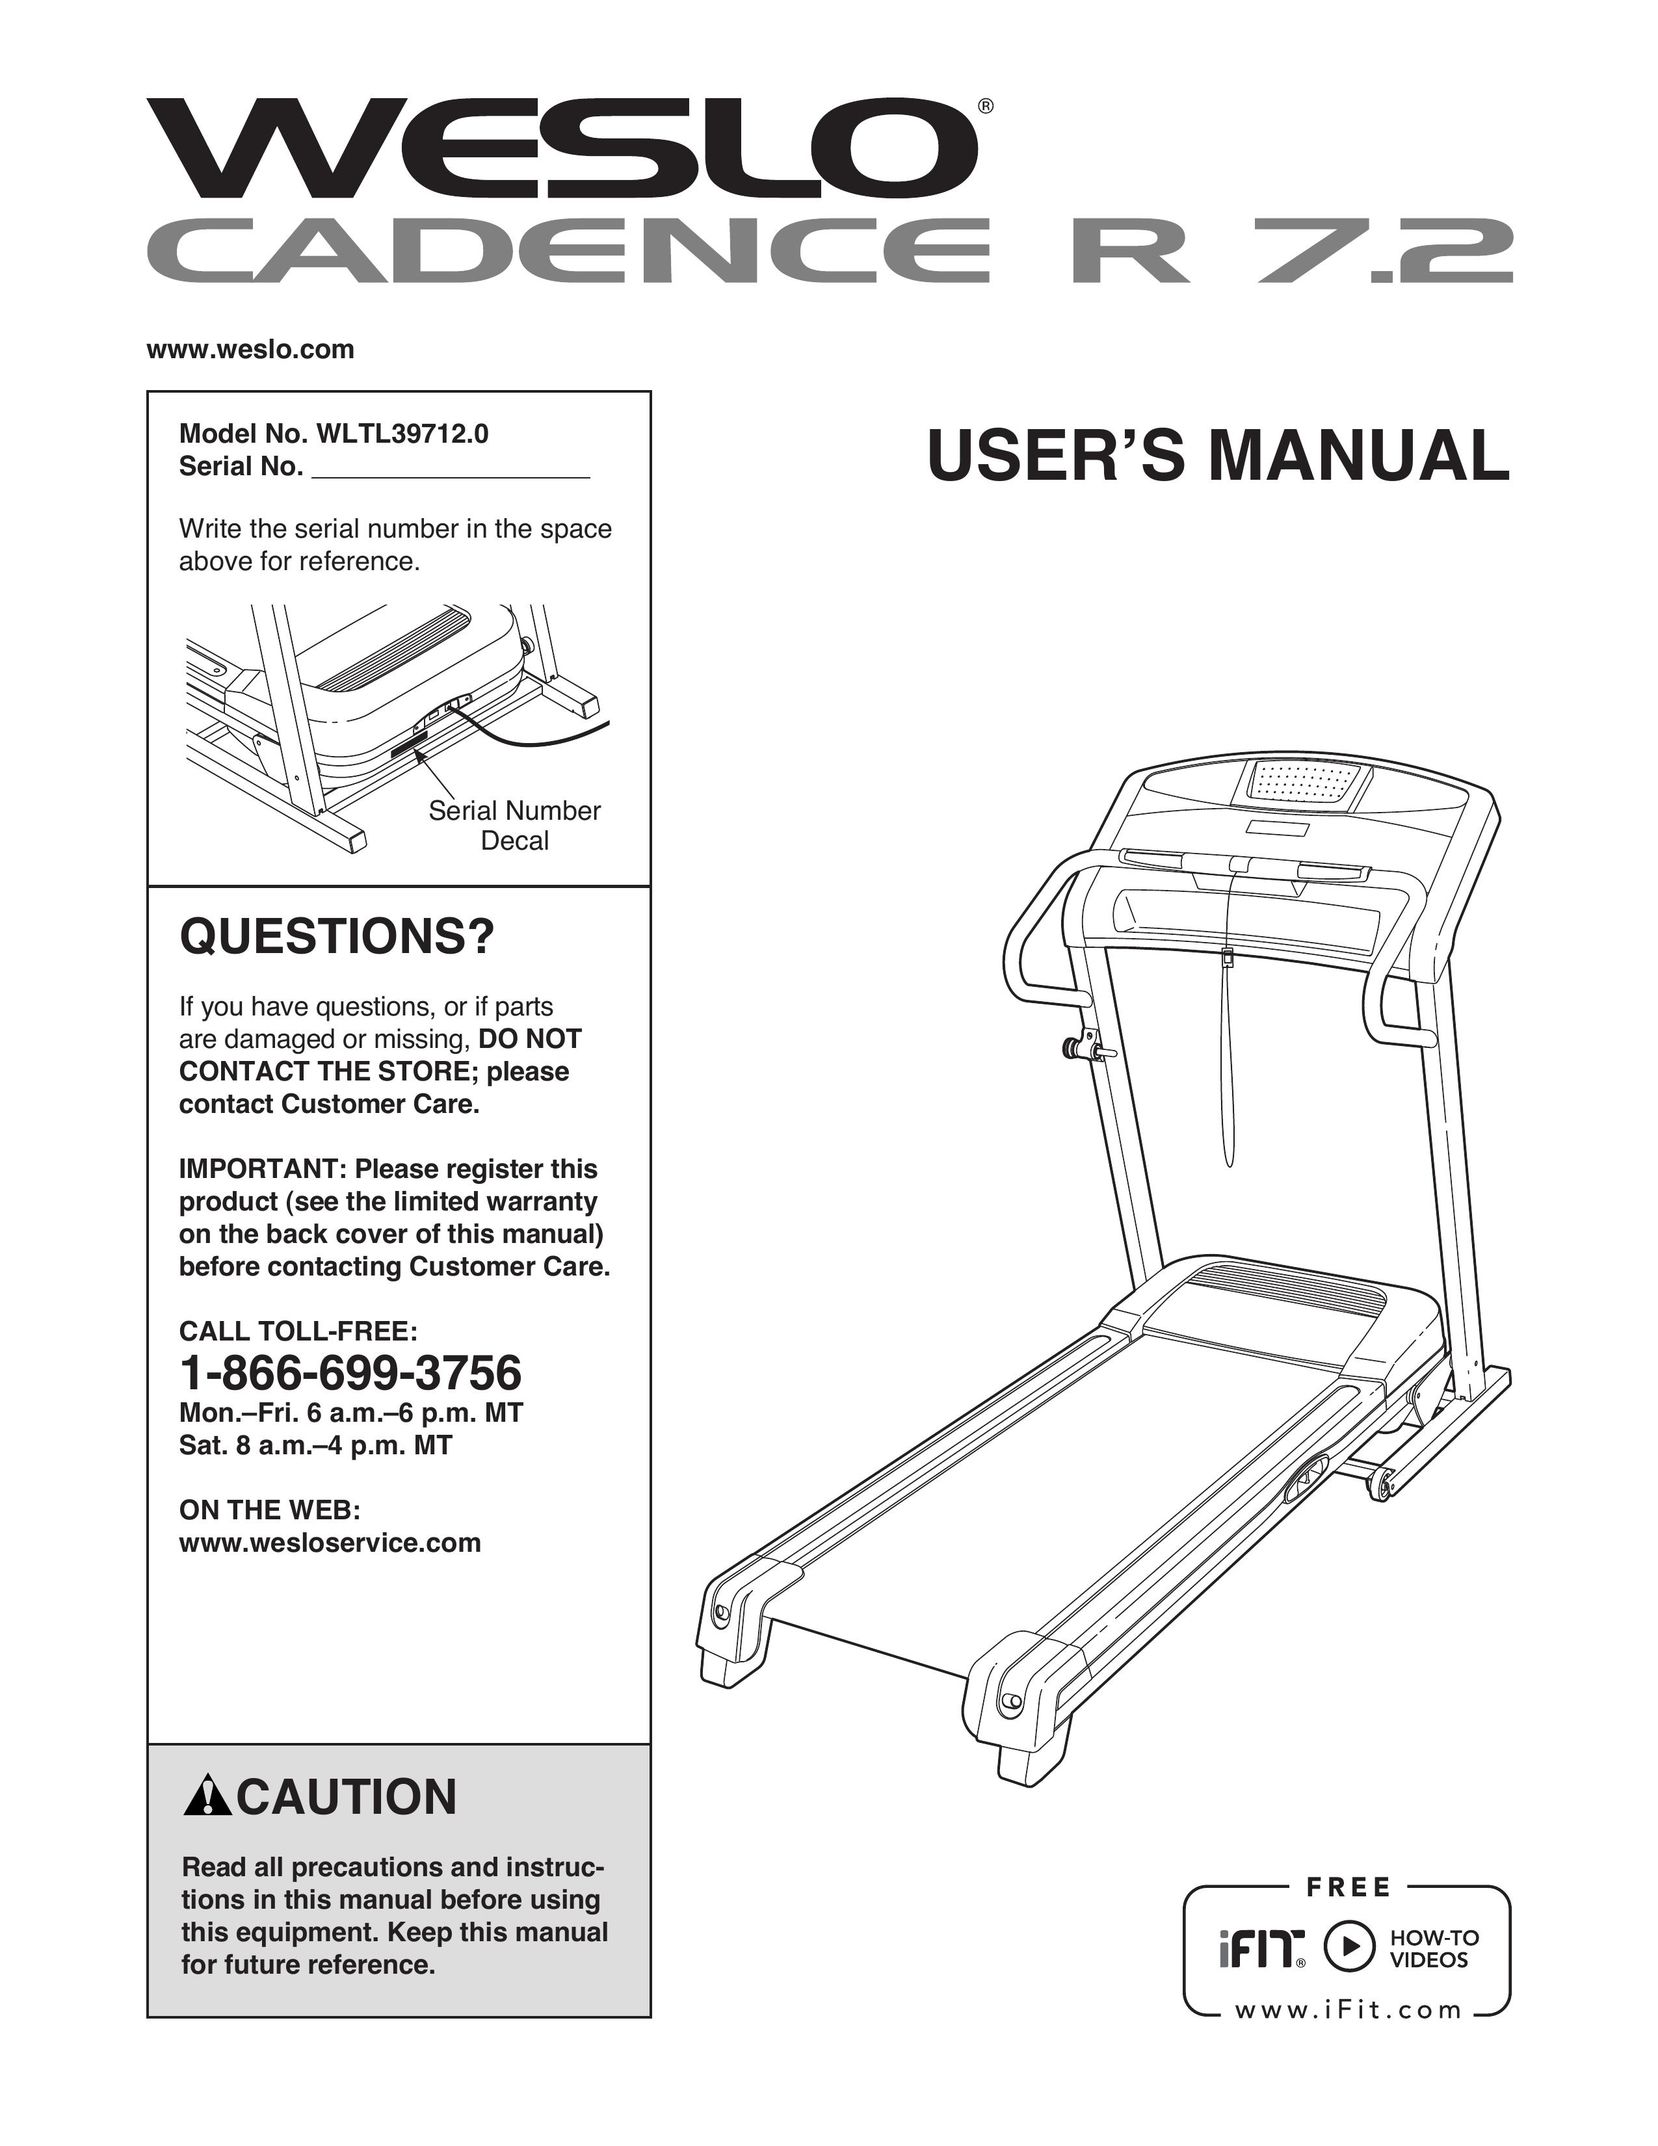 Weslo R 7.2 Treadmill User Manual